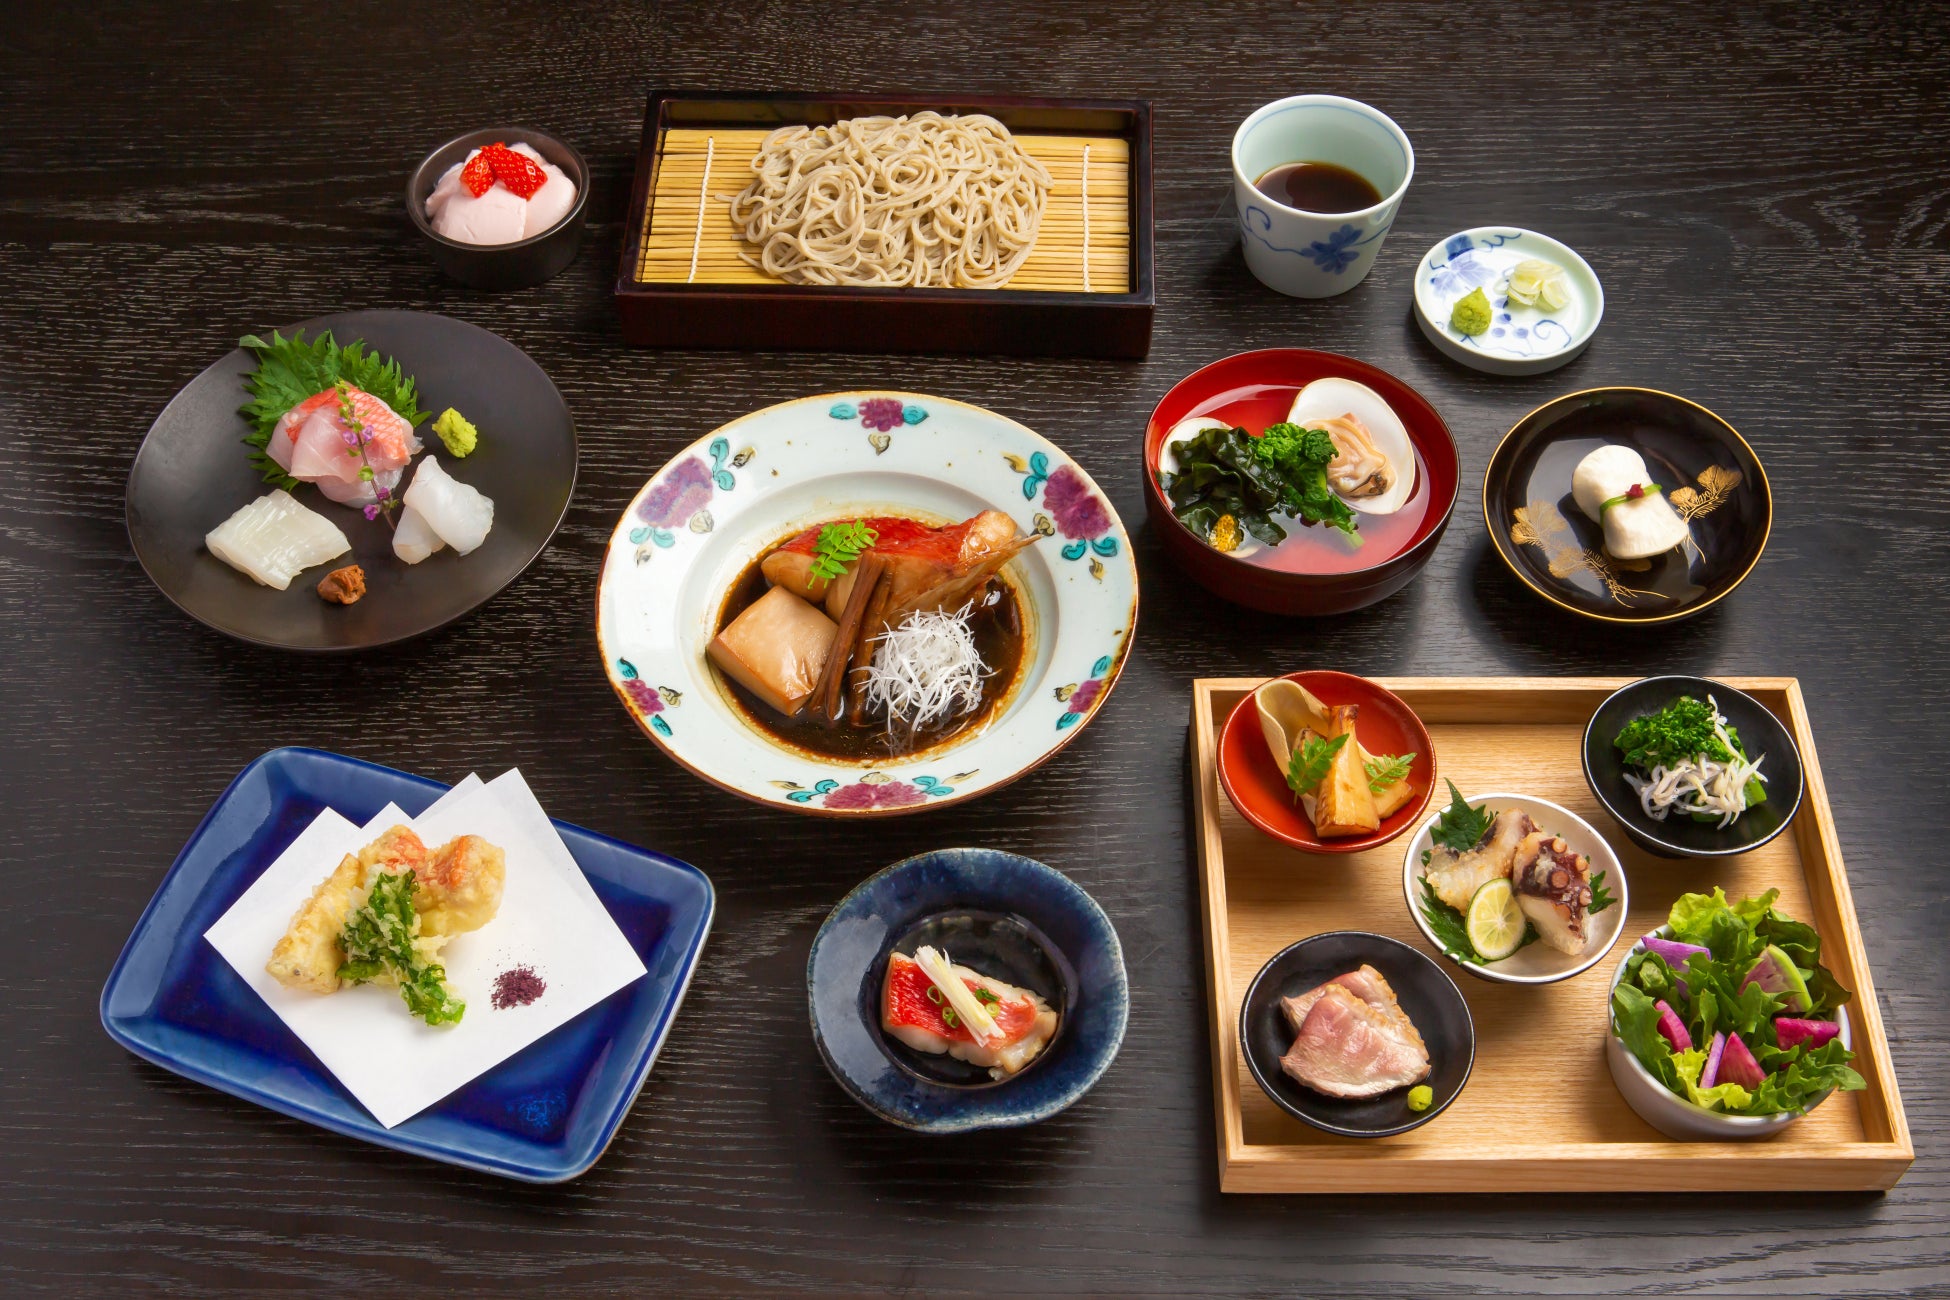 松輪の金目鯛を味わう「鎌倉 松原庵 青のディナーコース付きプラン」